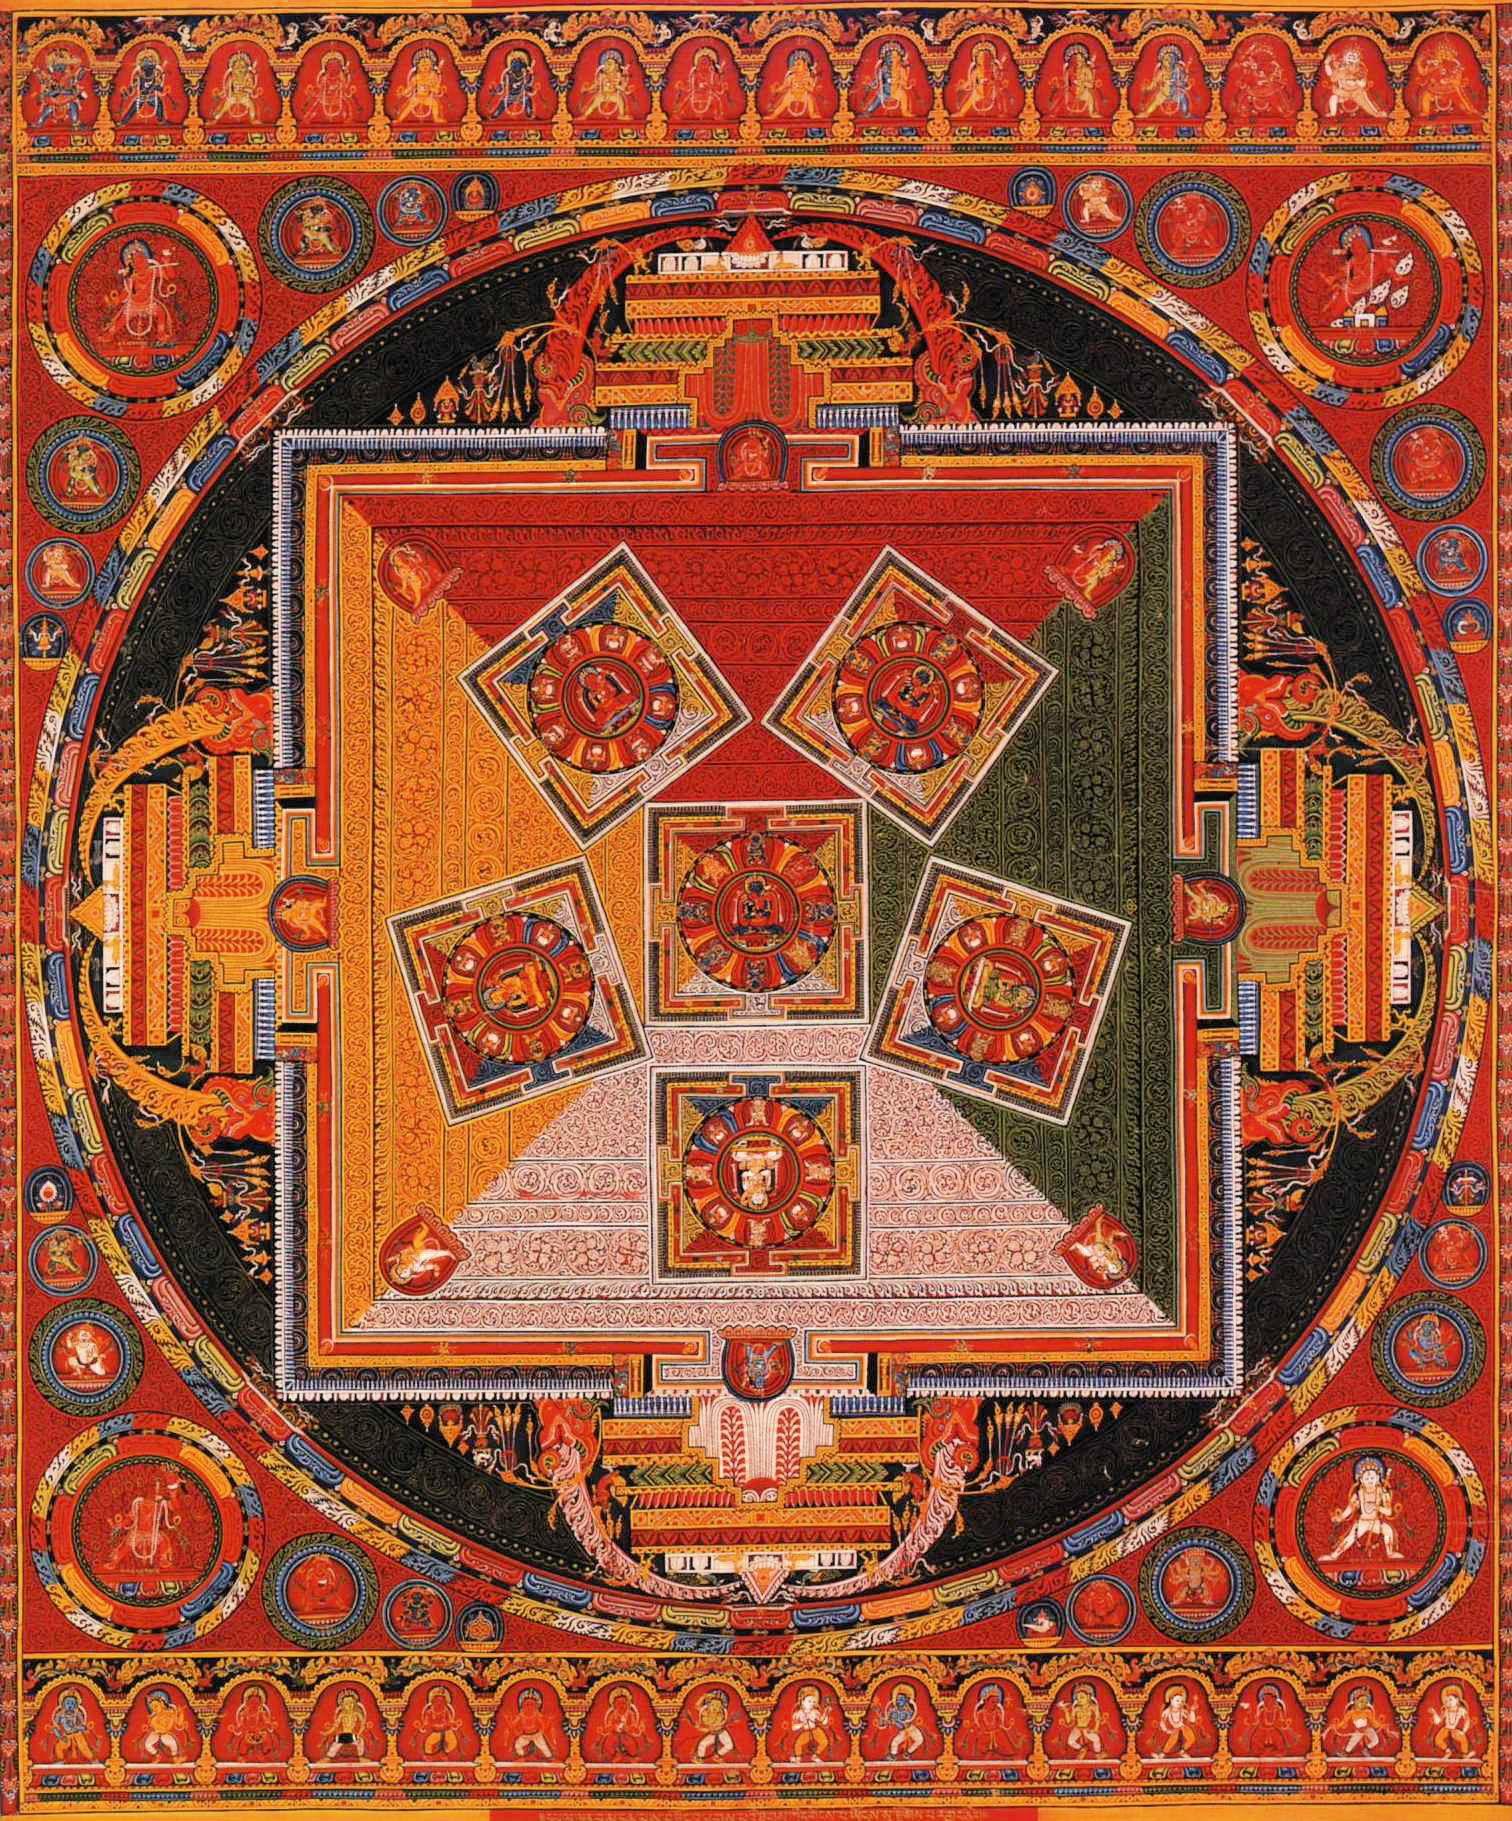 Mandala of the Six